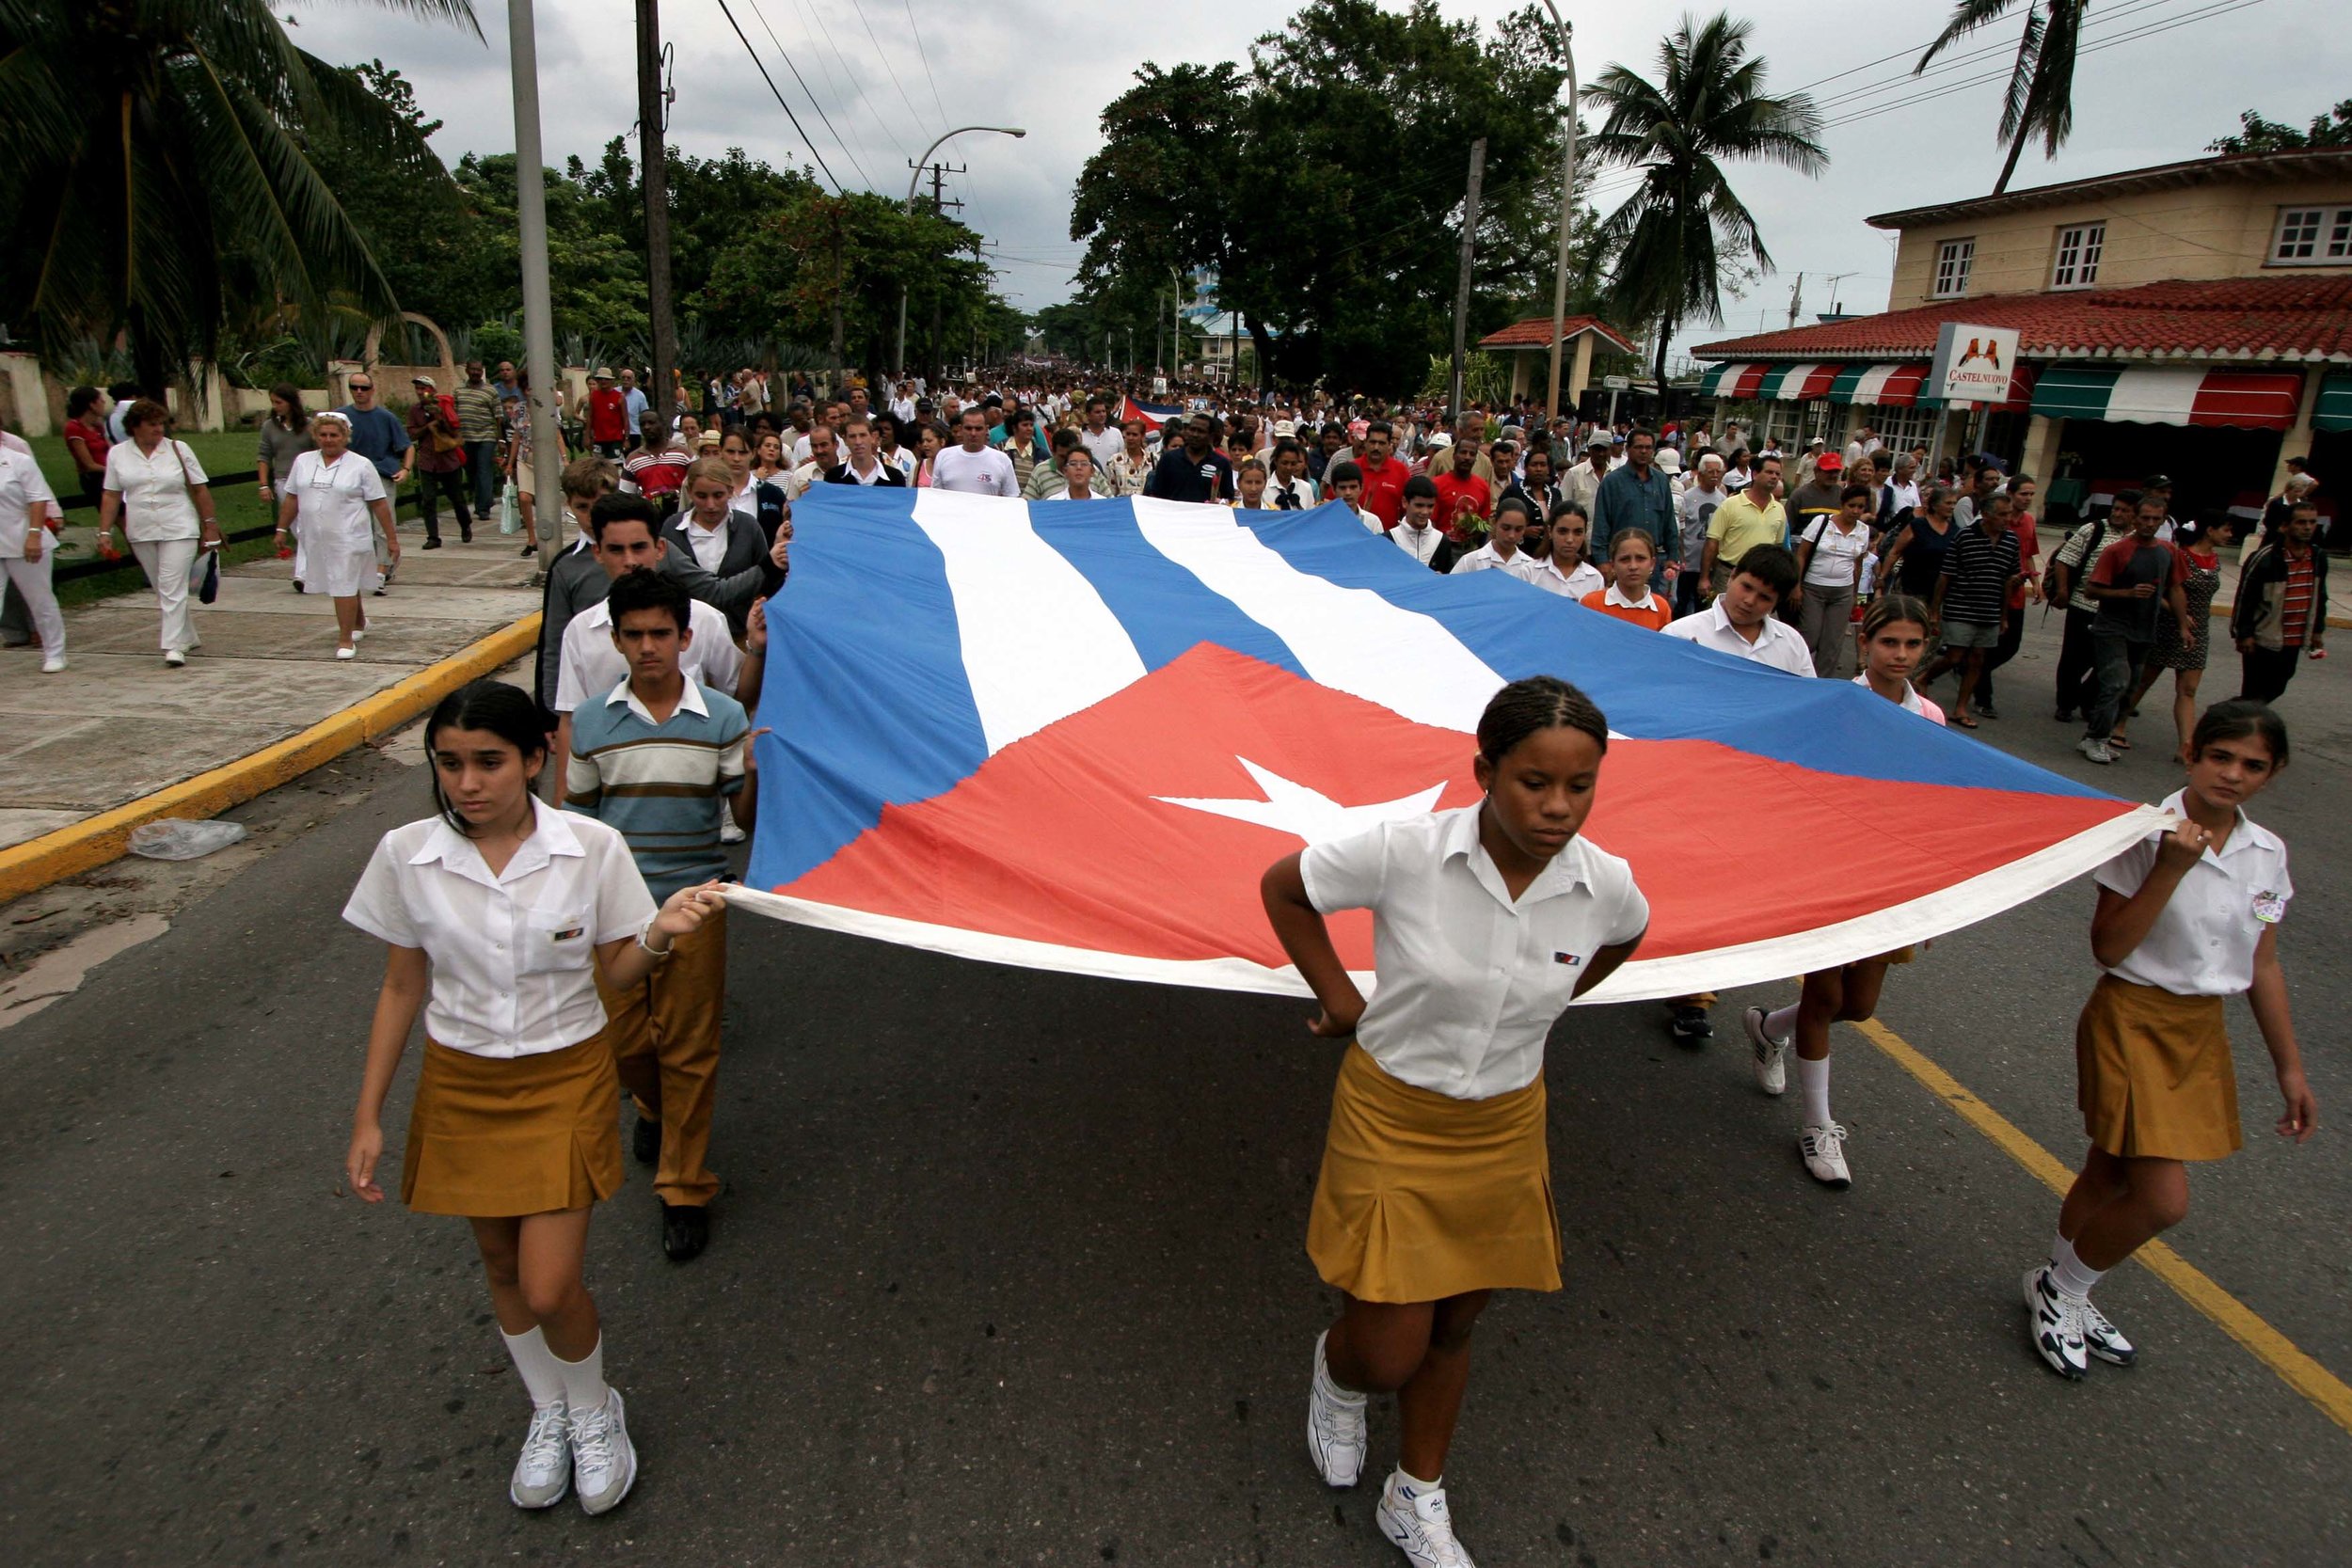 Celebrating Cienfuegos, Cuba